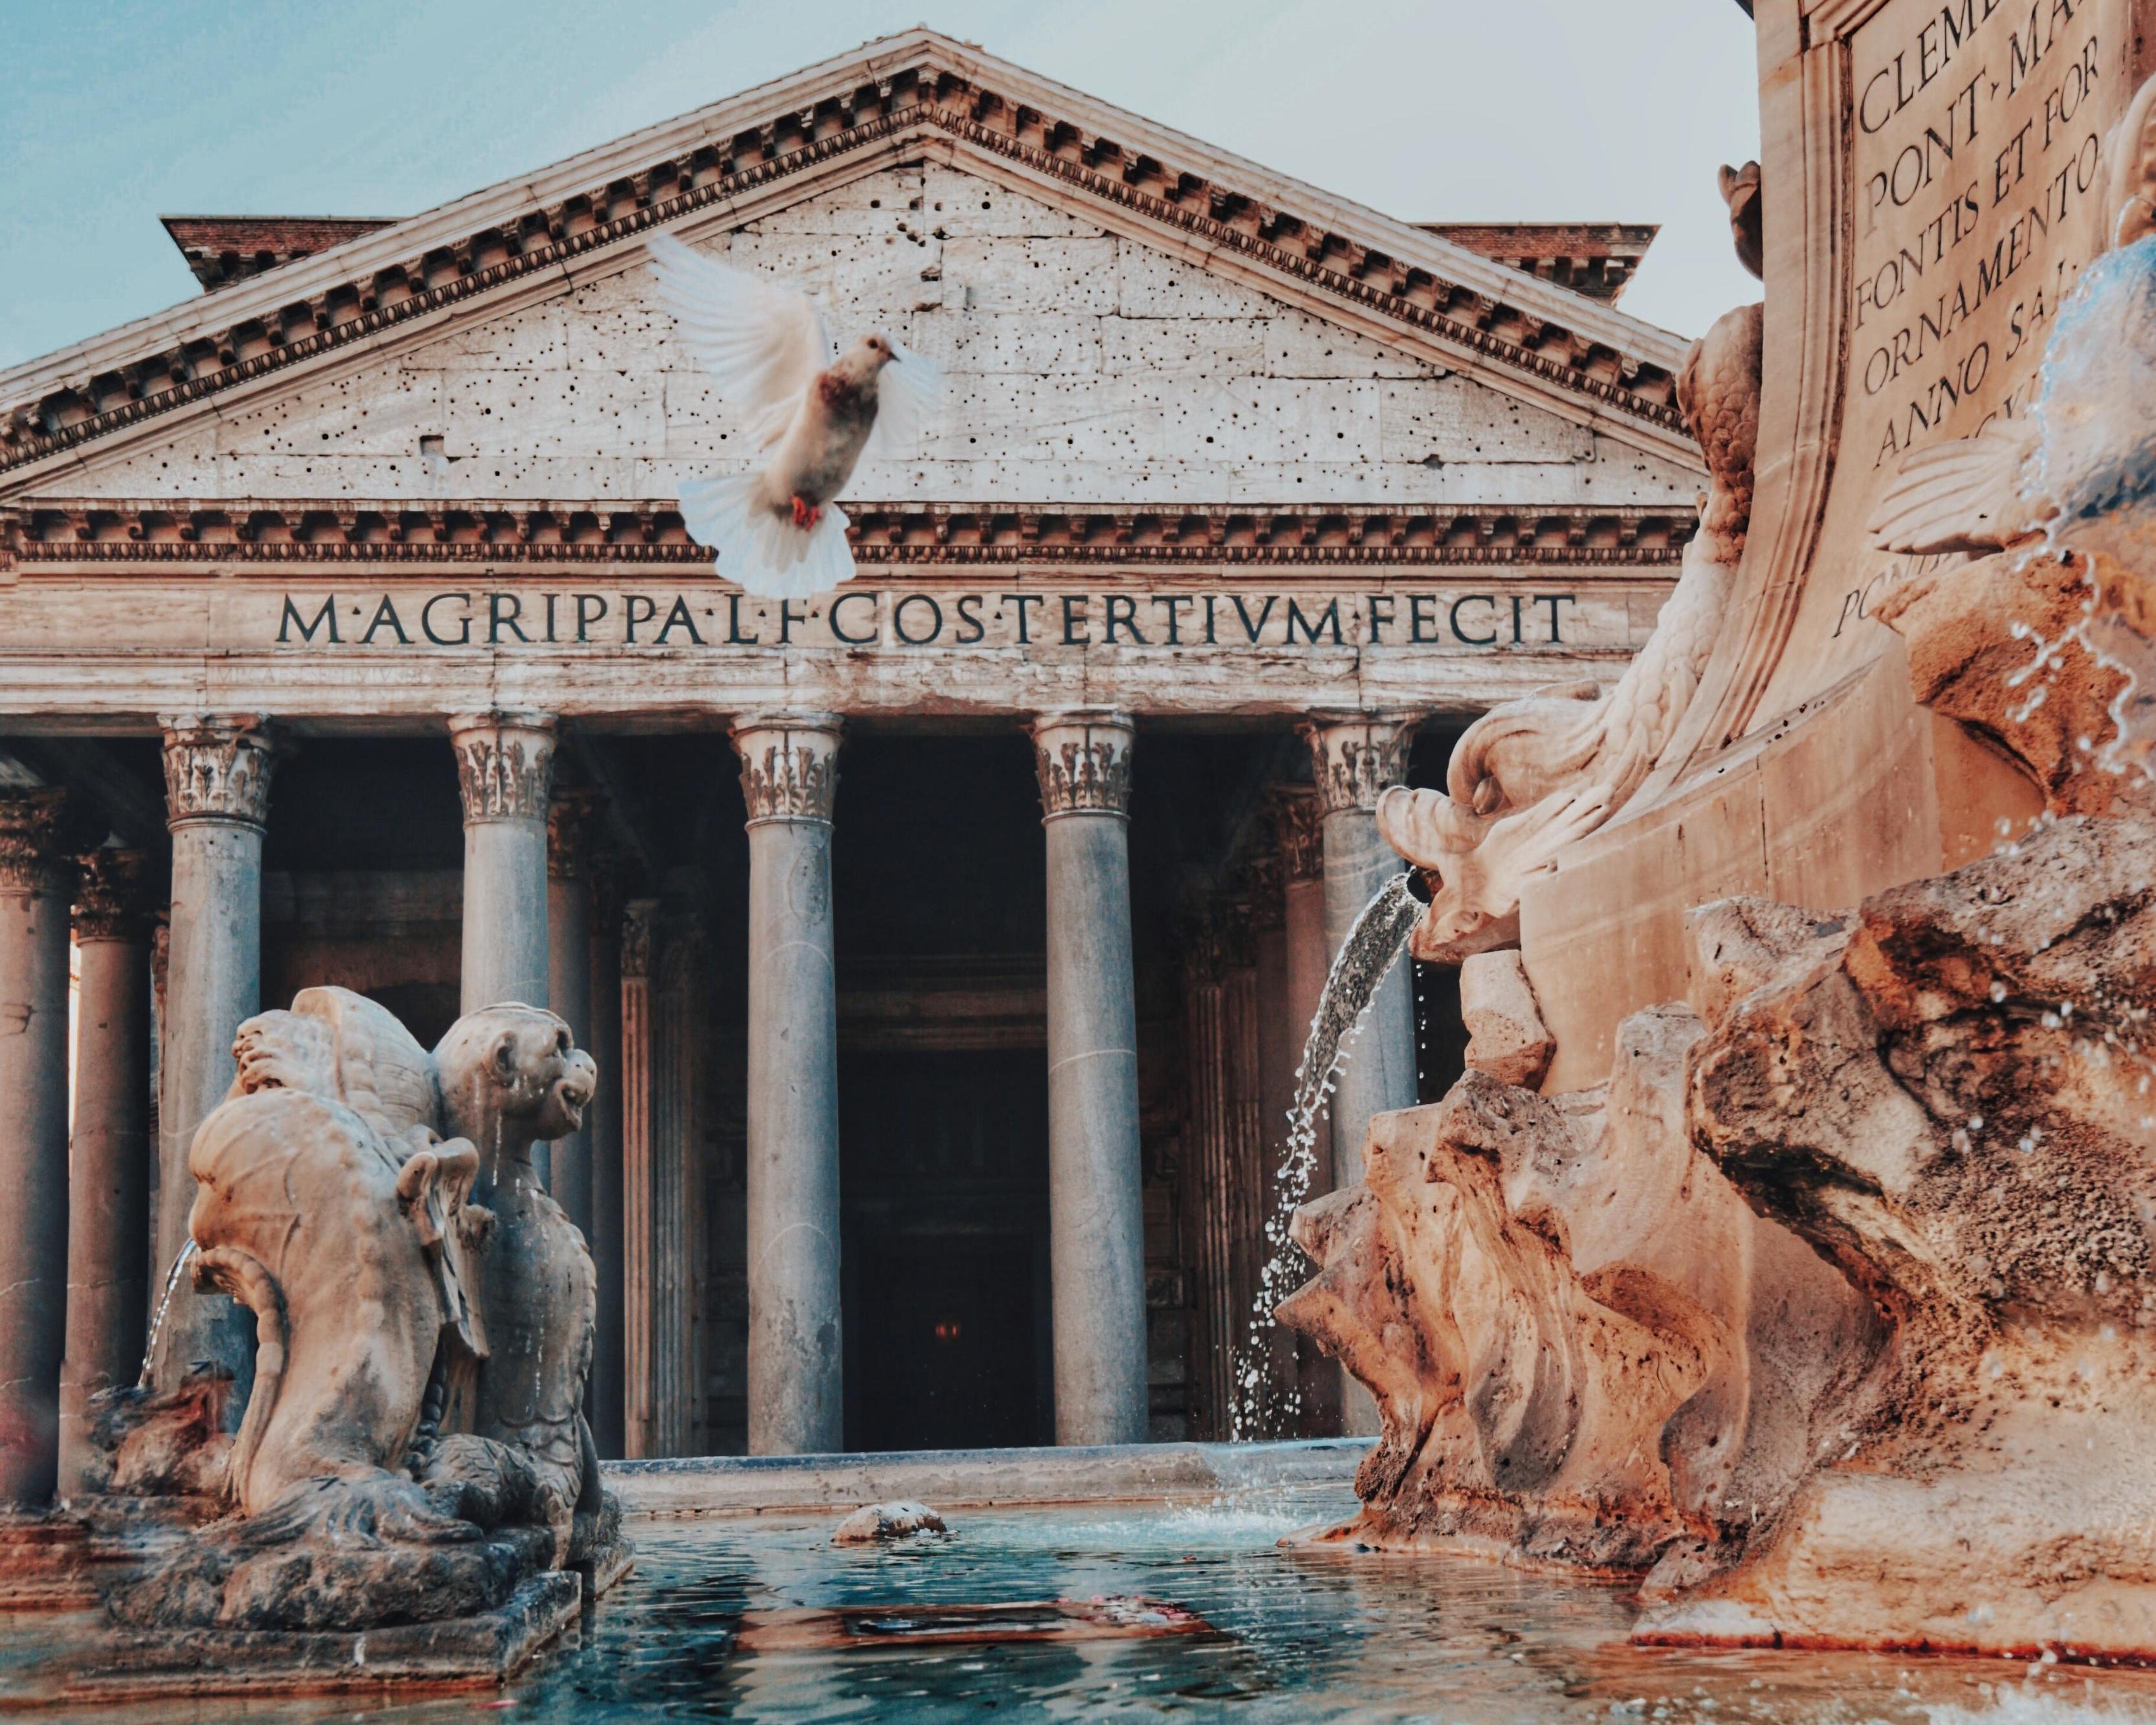 pintar alcanzar mineral Viaje a Italia y visitando Roma desde 373,- € - Encuentra el viaje de tus  sueños | Viajes.com